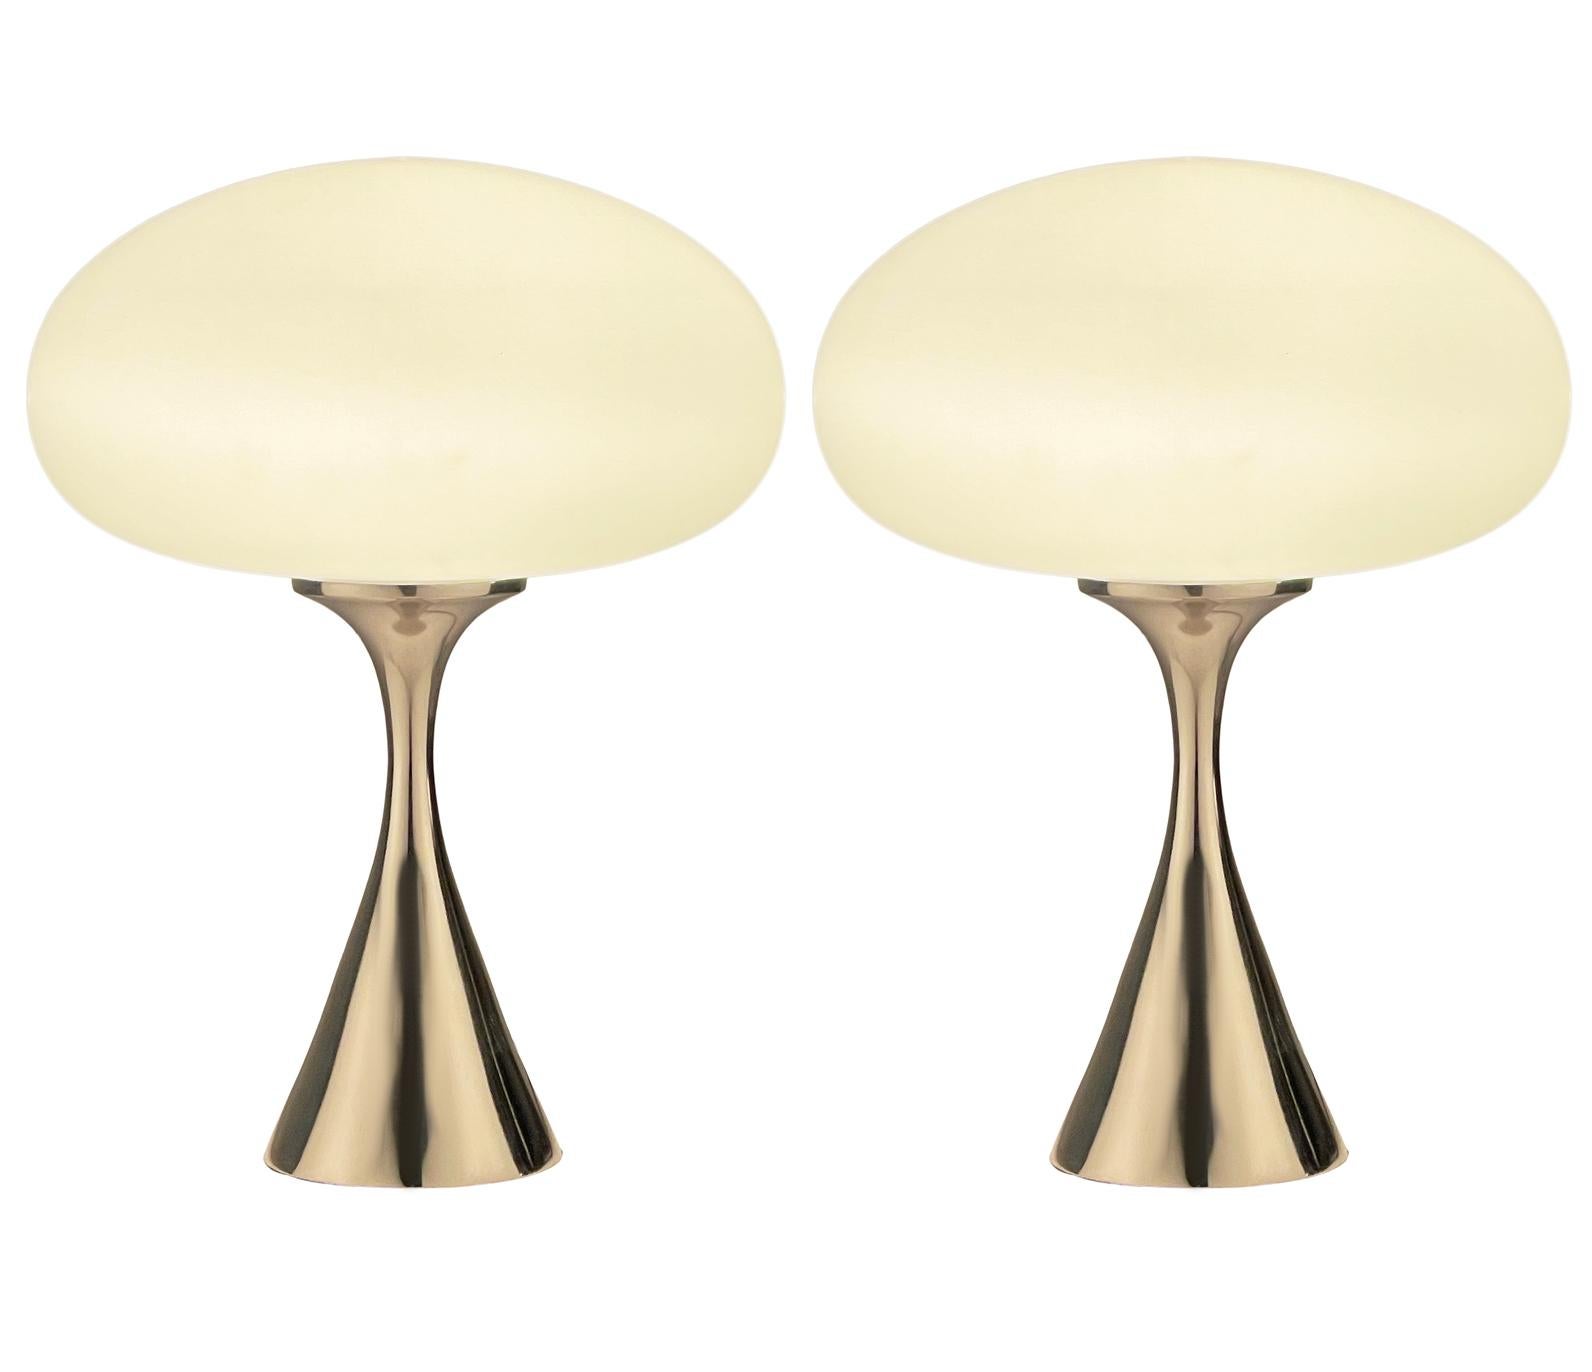 Une belle paire de lampes de table assorties en forme de champignon conique d'après Laurel Lamp Company. Les lampes sont dotées d'une base en fonte d'aluminium chromée et d'un abat-jour en verre dépoli soufflé à la bouche. Le prix comprend la paire